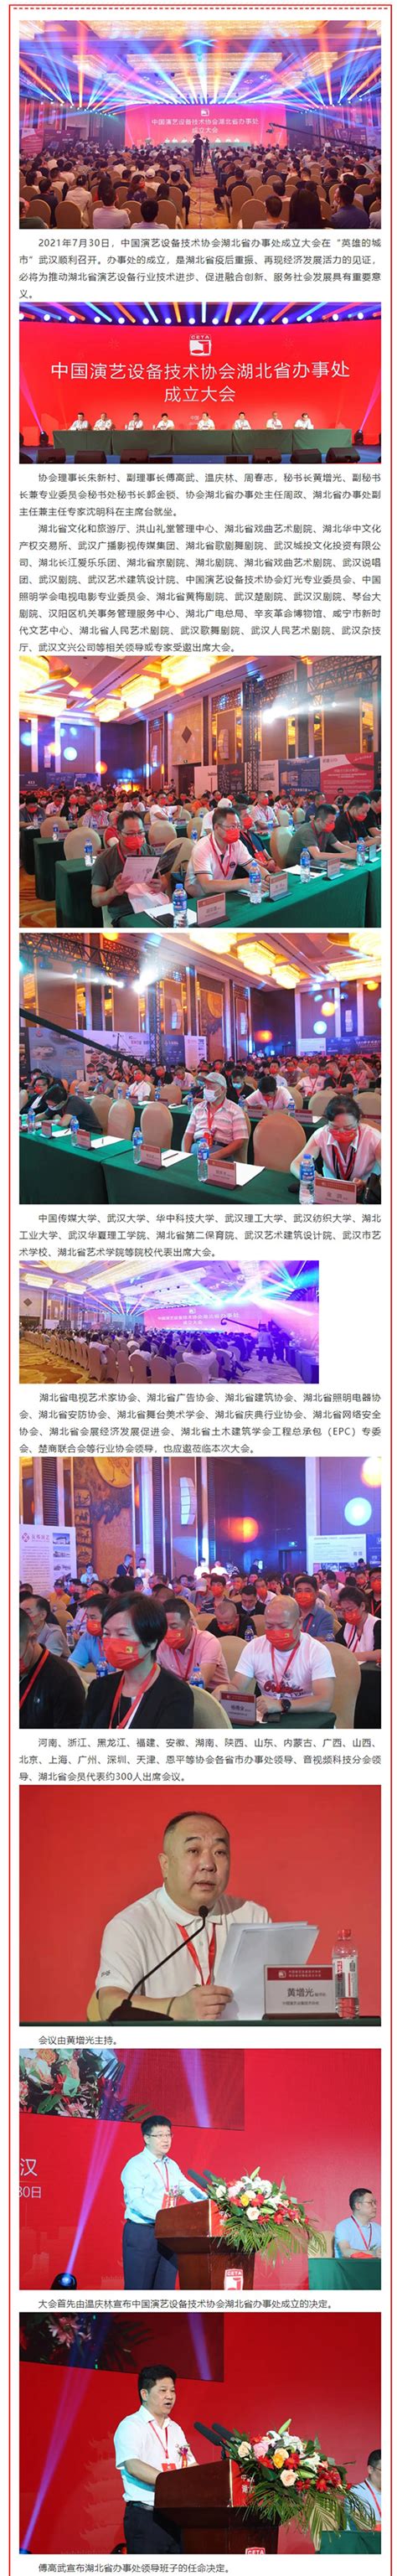 中国演艺设备技术协会湖北省办事处成立大会在武汉顺利召开_中国演艺设备技术协会